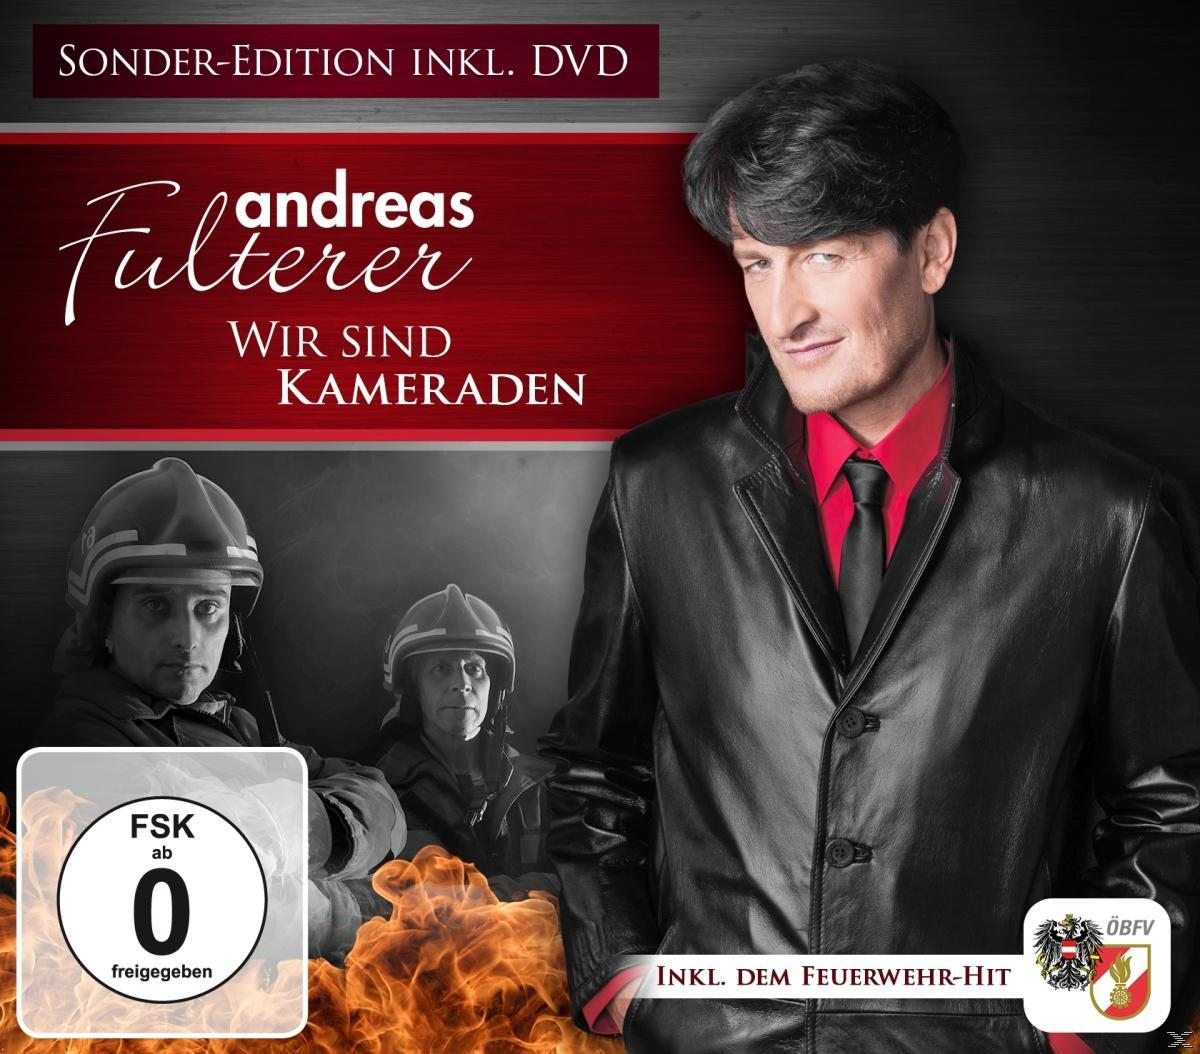 Kameraden-Sonderedition (Best Video) + Cd Bonus Dvd) Sind Wir (CD - + DVD Fulterer Of Andreas -